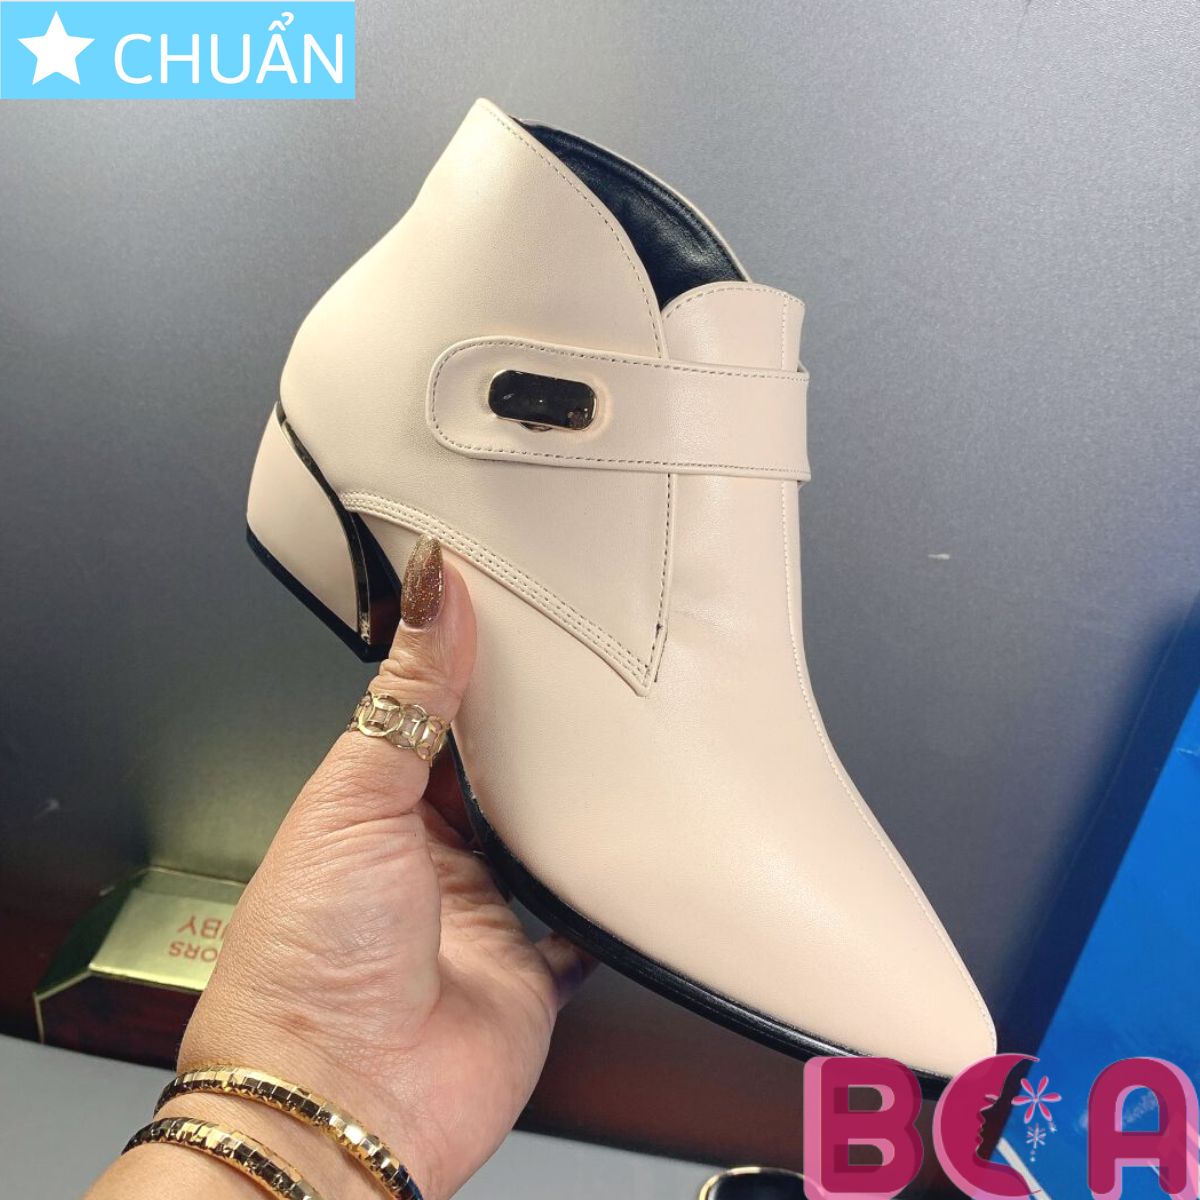 Giày bốt nữ cổ ngắn màu trắng kem 4p RO308 ROSATA tại BCASHOP khóa nút tiện lợi, mùi nhọn sang trọng thể hiện đẳng cấp